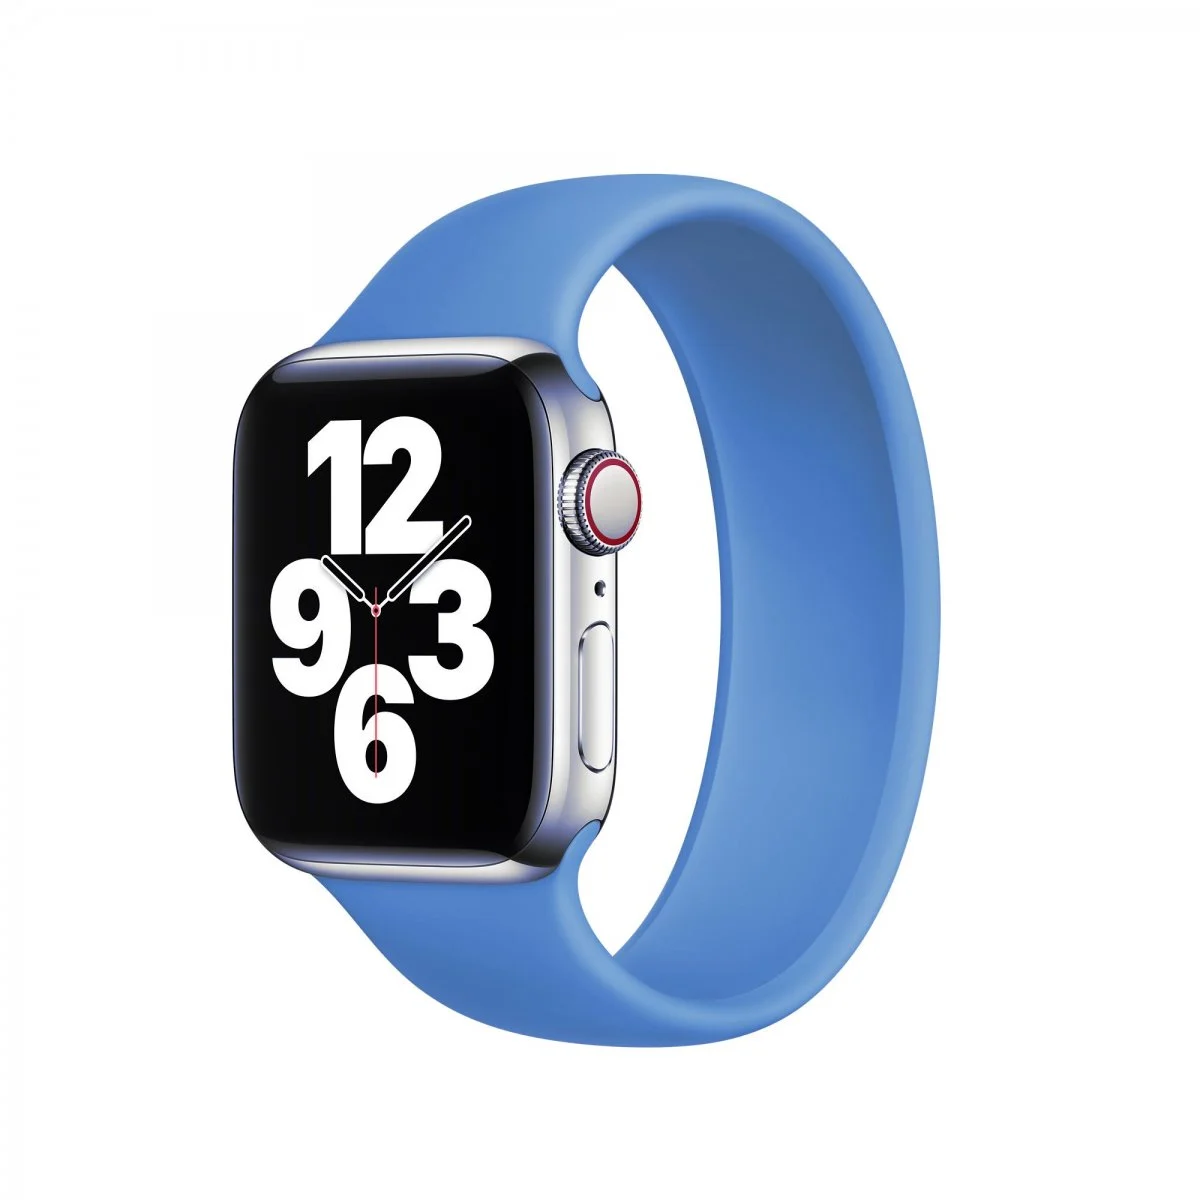 Řemínek iMore Solo Loop Apple Watch Series 1/2/3 42mm - Modrá (M)